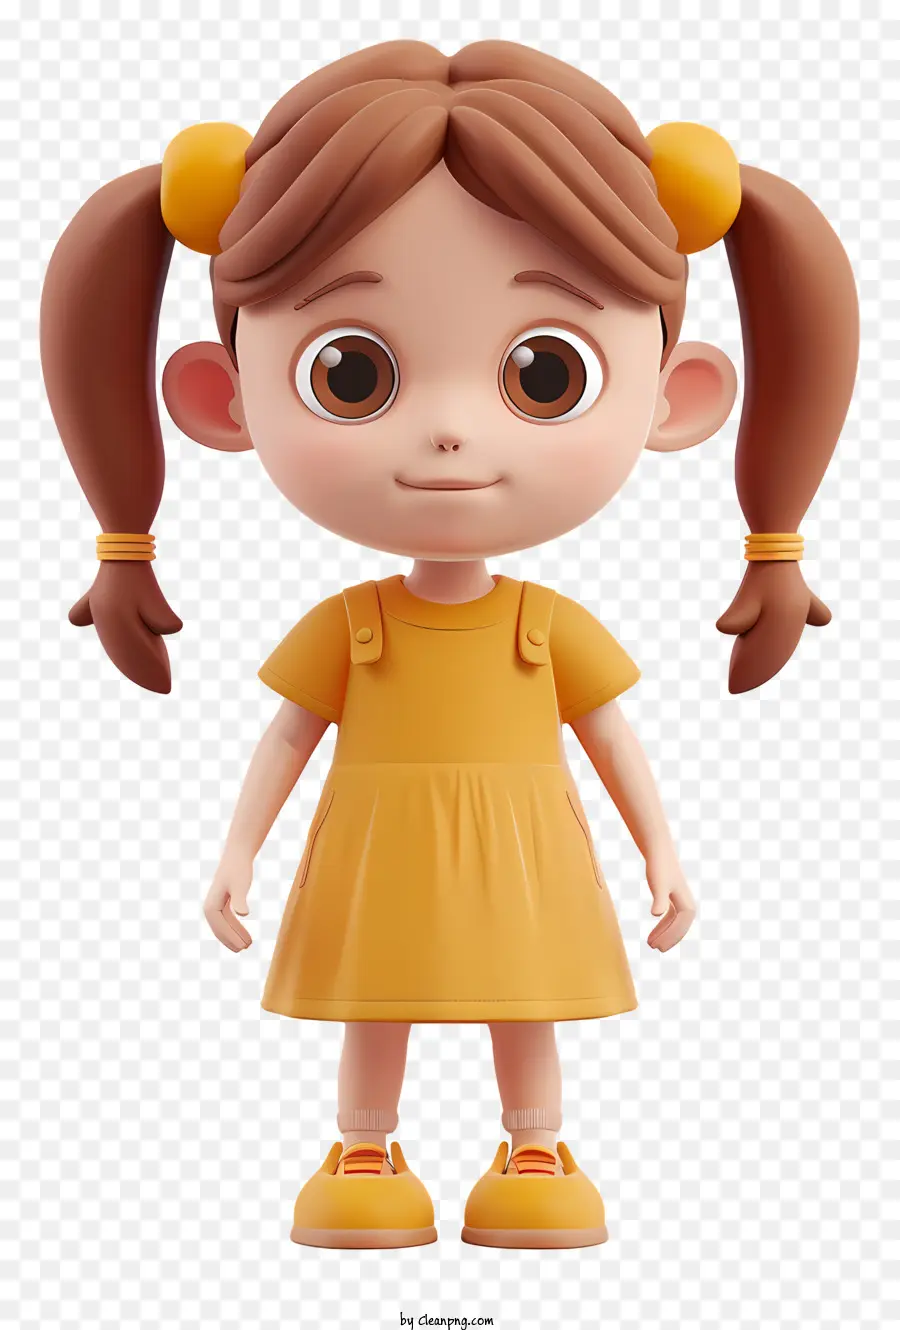 cô gái nhỏ - Cô gái hoạt hình mặc váy màu cam, nền đen